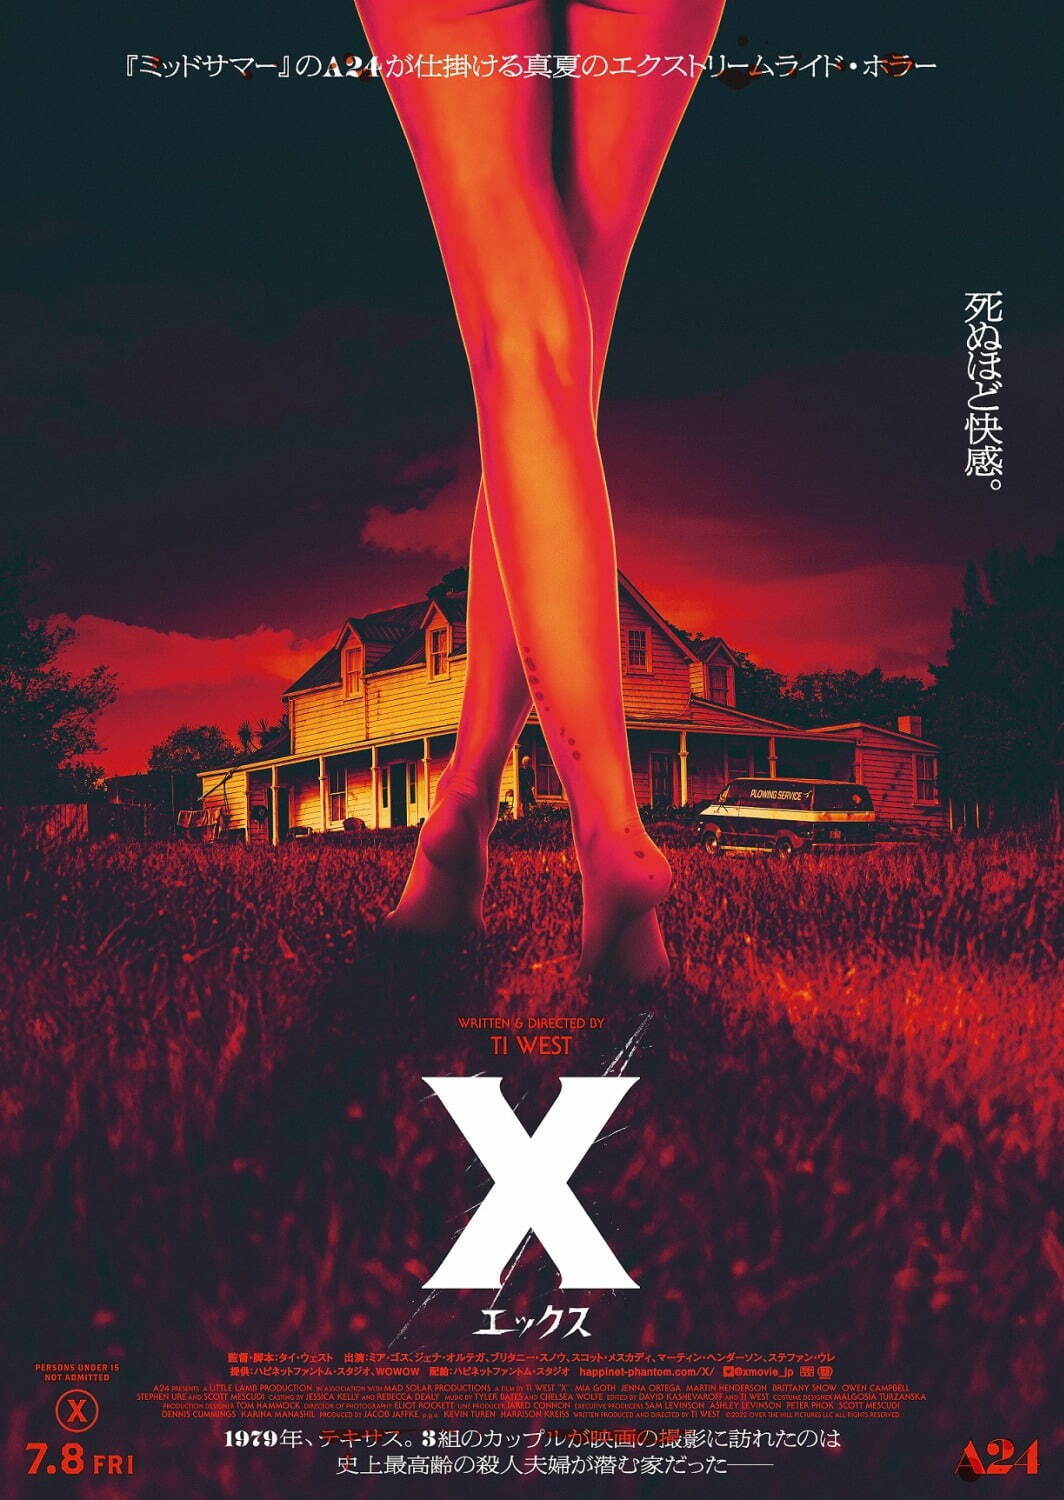 ホラー映画『X エックス』A24最新作、舞台は史上最高齢の“殺人夫婦”が棲む家 - ファッションプレス